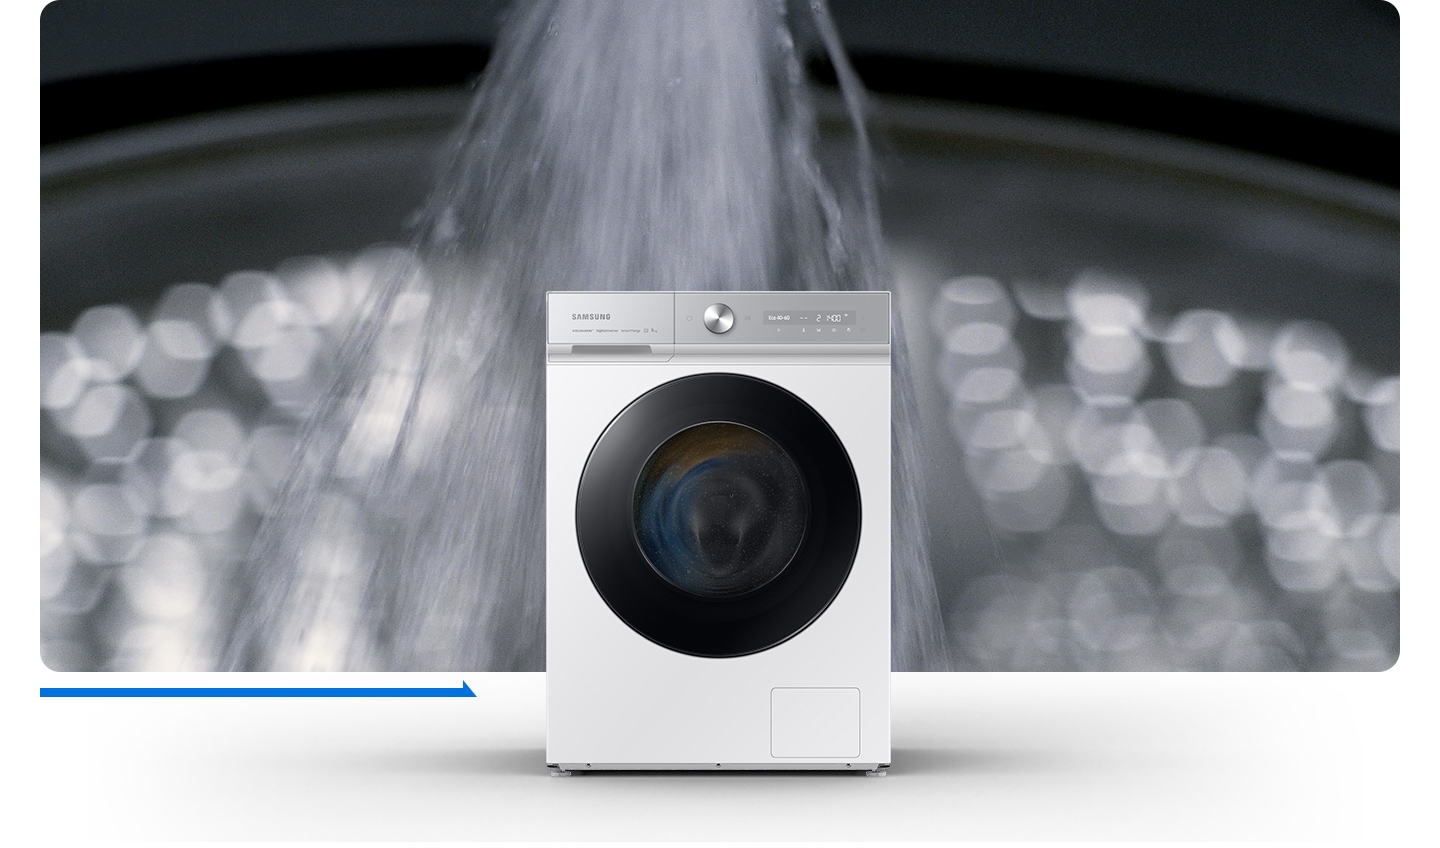 L'acqua potente viene spruzzata, si formano bolle e i vestiti vengono lavati. Sulla parte superiore della lavatrice compare la scritta "50%" risparmio di tempo".